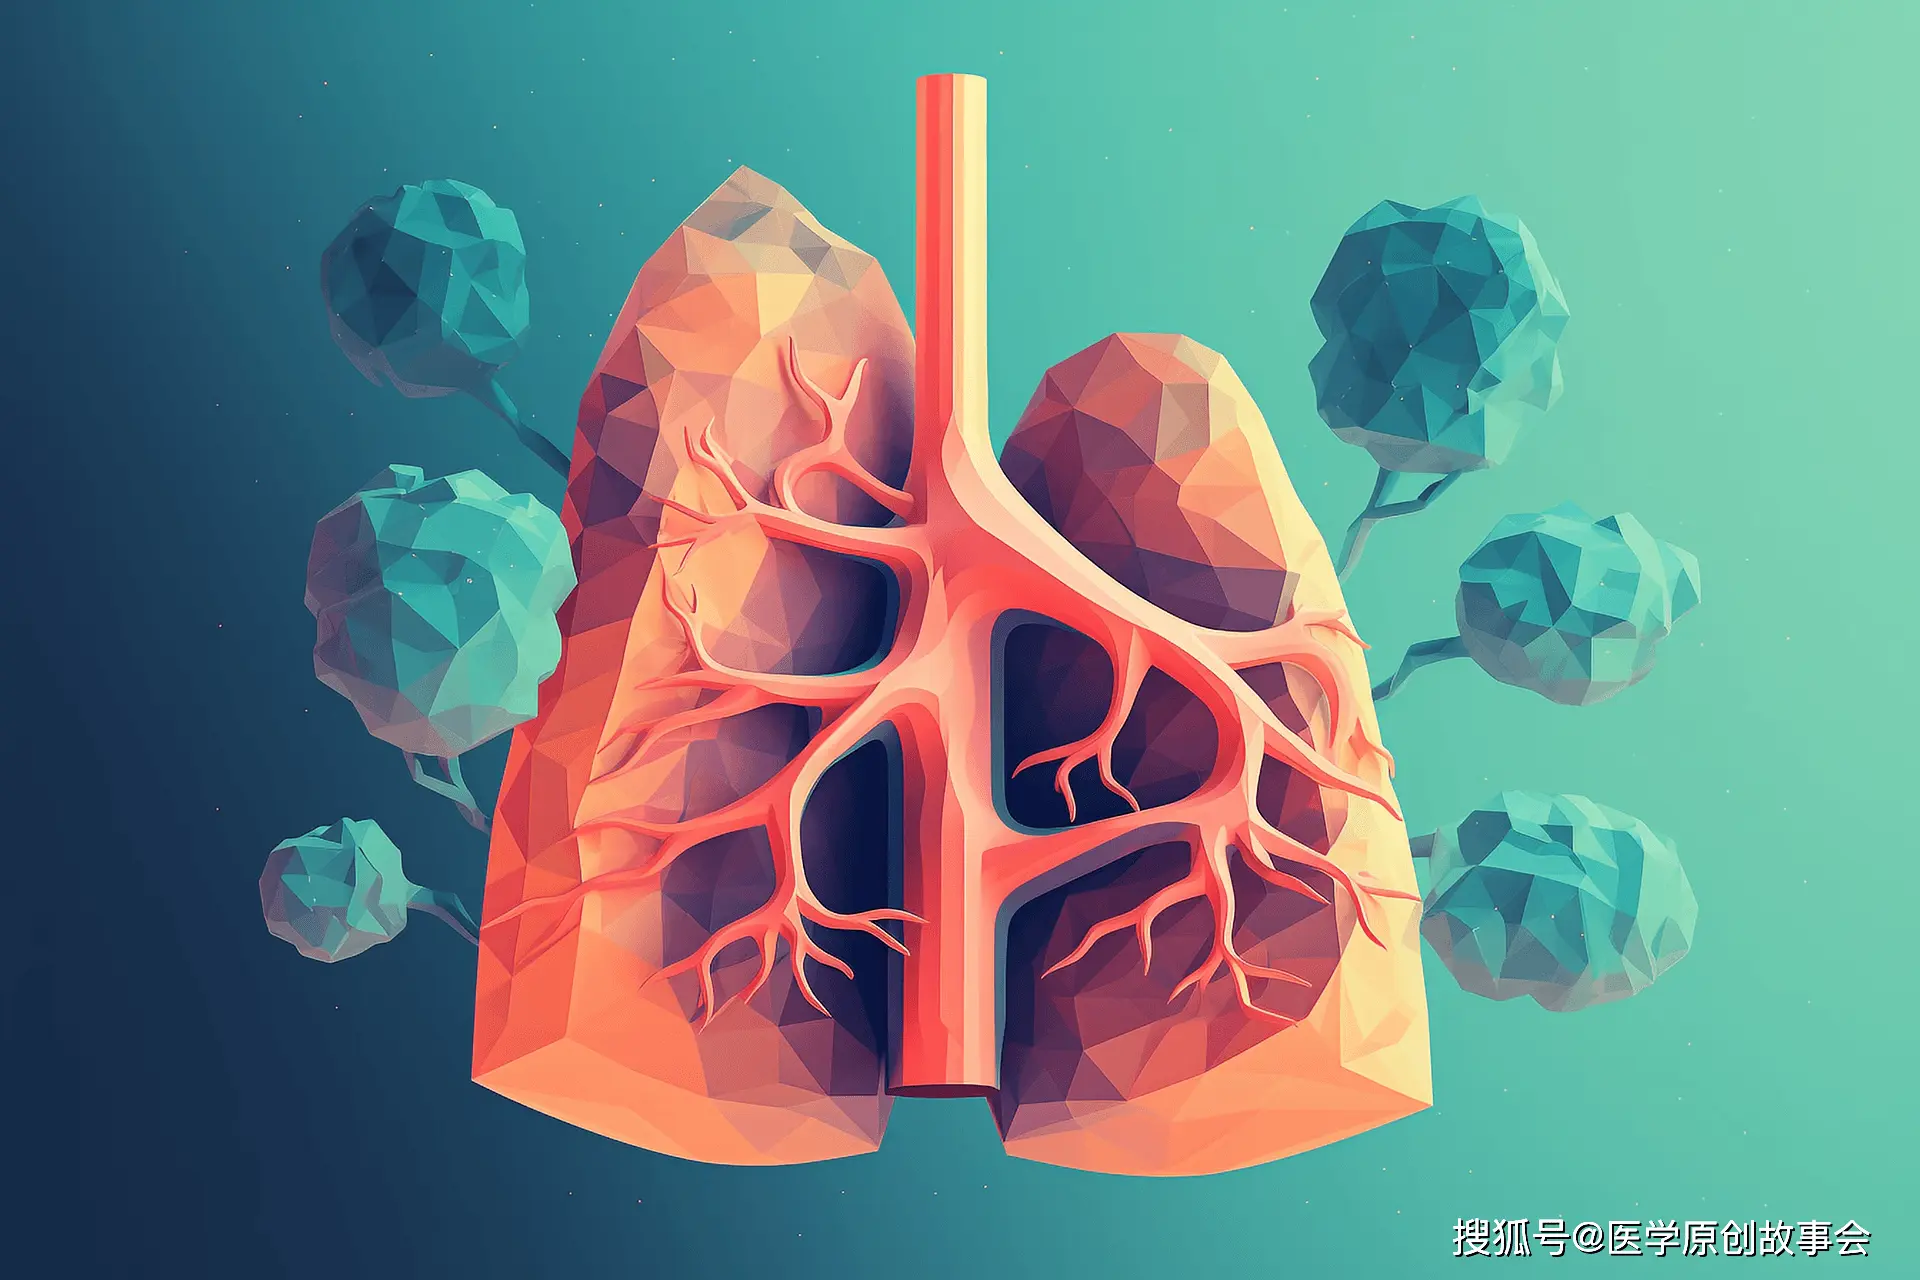 如果肺部结节出现这两种变化，基本可以排除恶性可能，不用手术